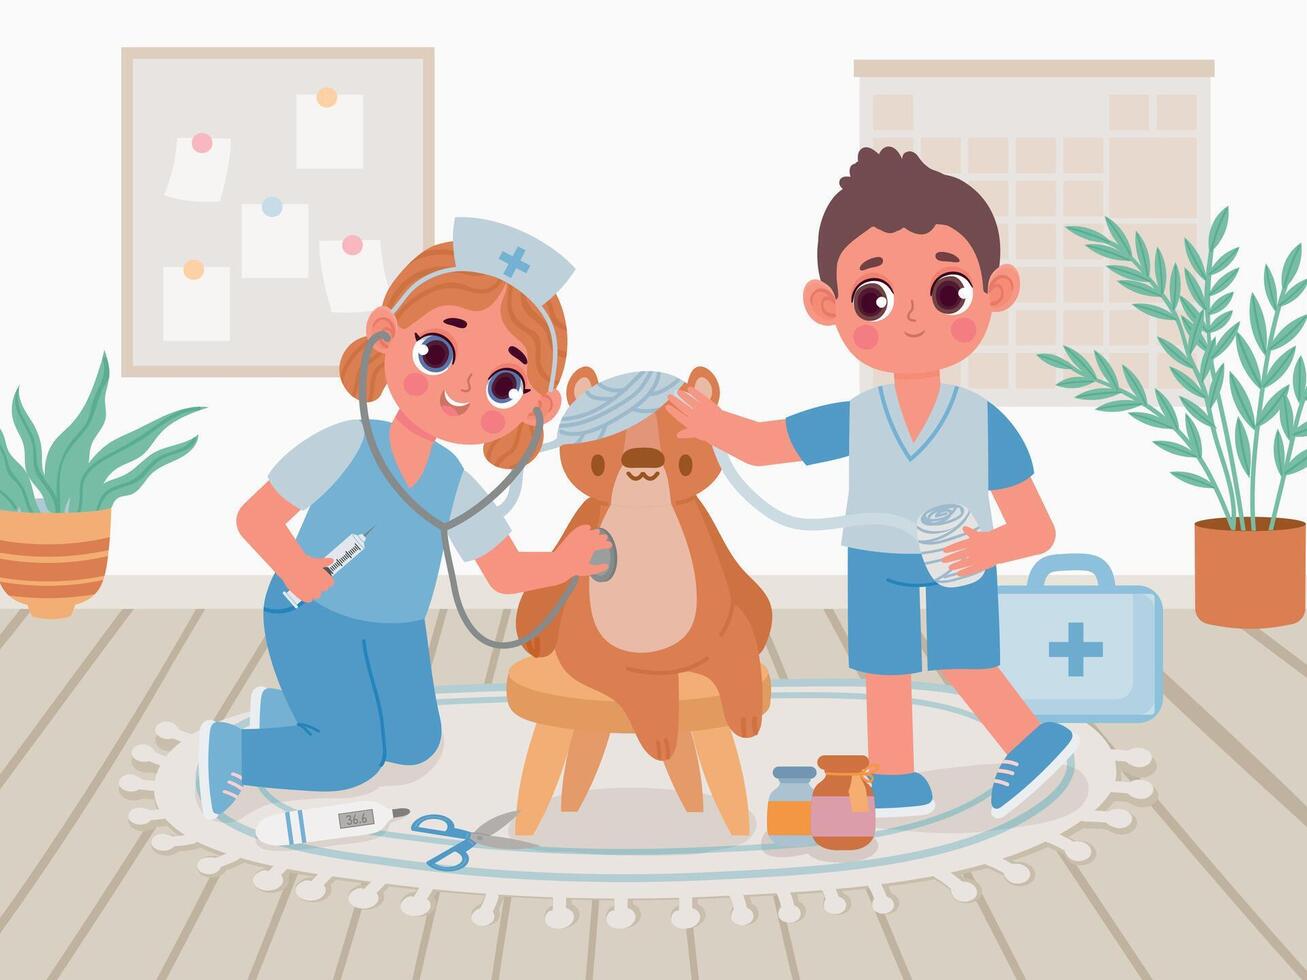 Karikatur Kindergarten Kinder im Arzt Uniform abspielen Krankenhaus zum Spielzeuge. Kinder behandeln Teddy Bär mit Spielzeug Stethoskop und Binde Vektor Szene